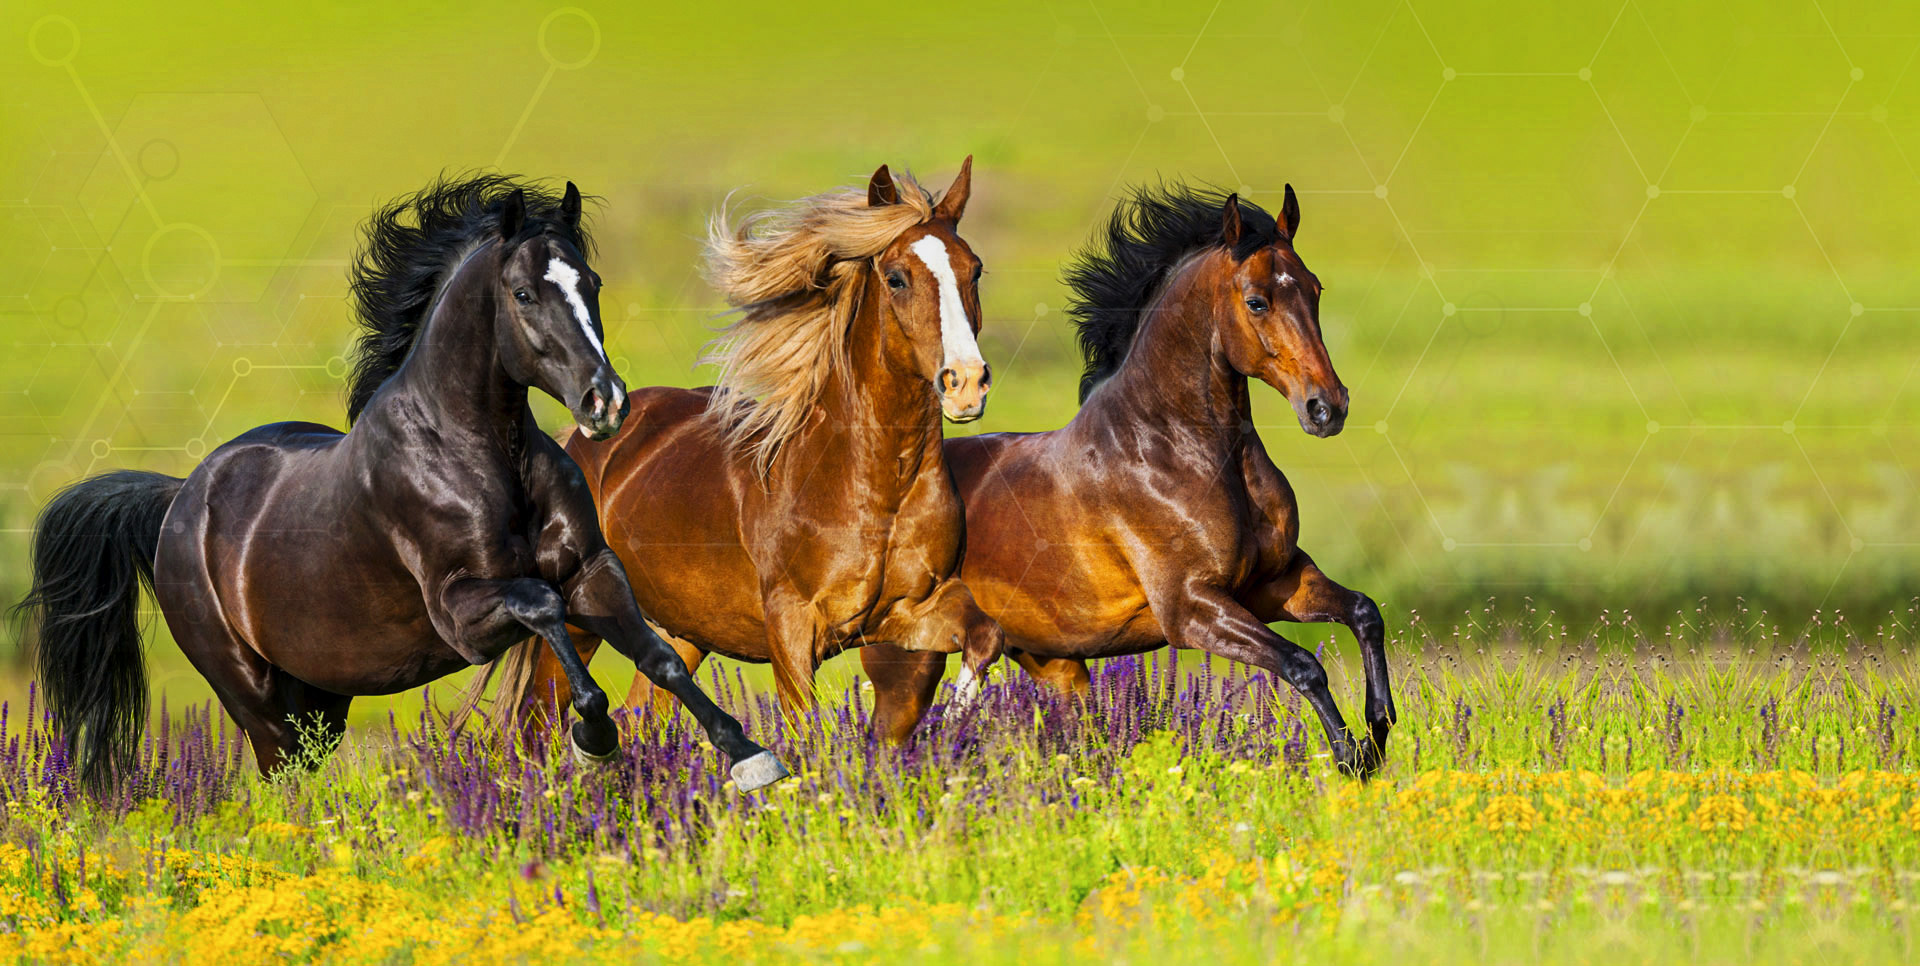 Jaki skład powinny mieć dobre pasze dla koni?